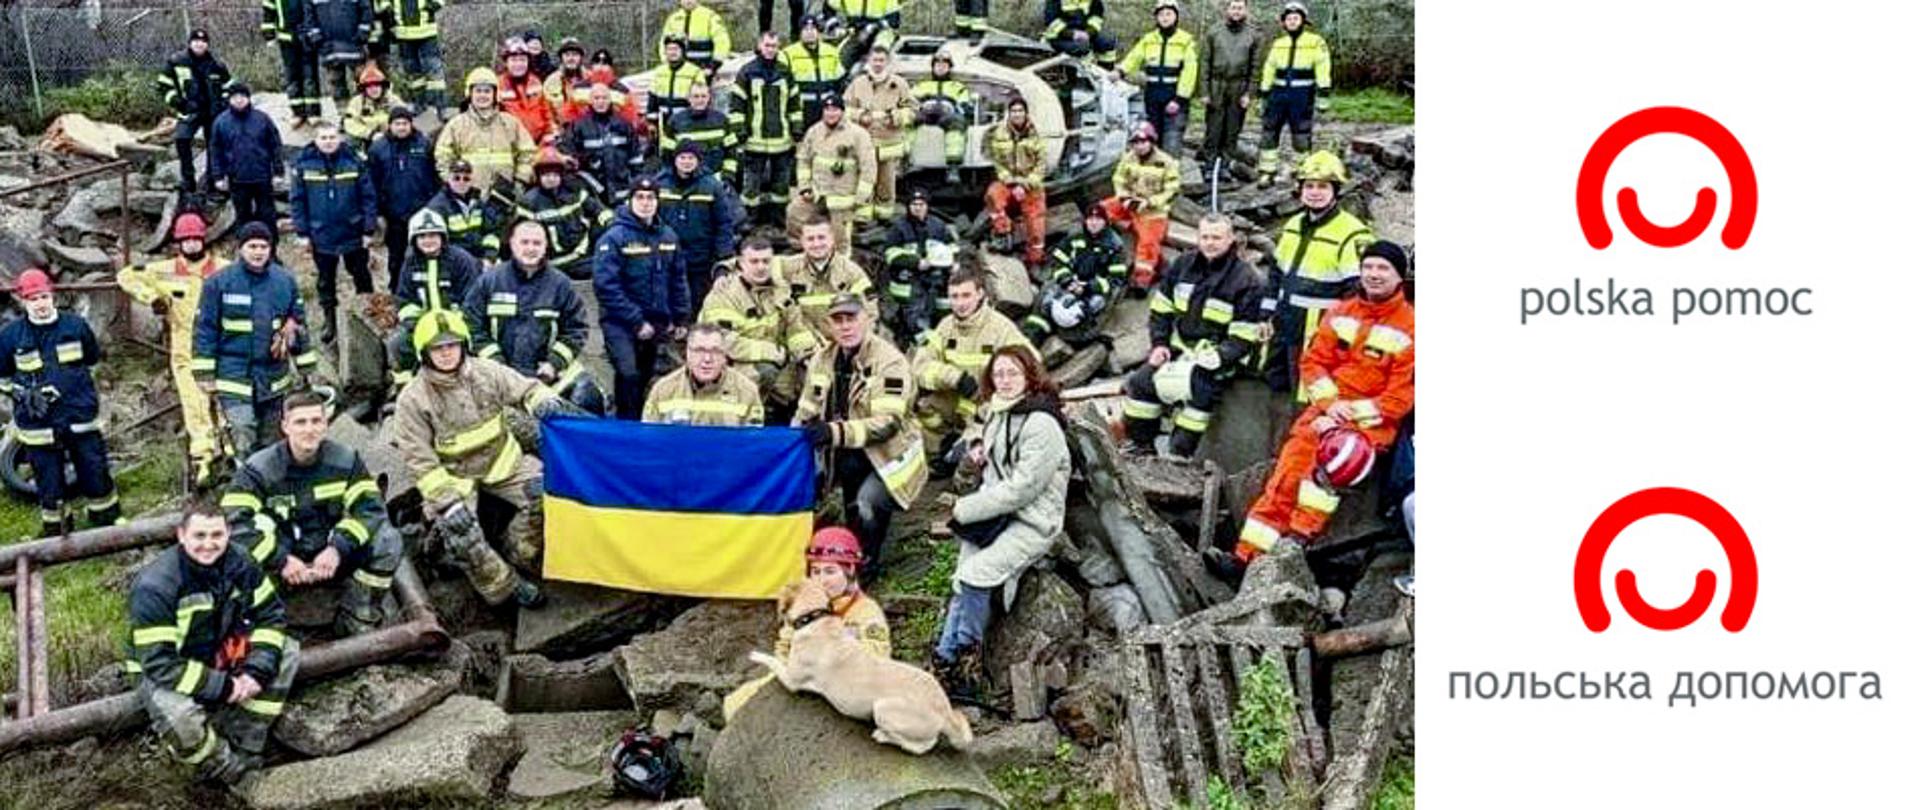 Szkolenie dla strażaków Państwowej Służby Ukrainy ds. Sytuacji Nadzwyczajnych